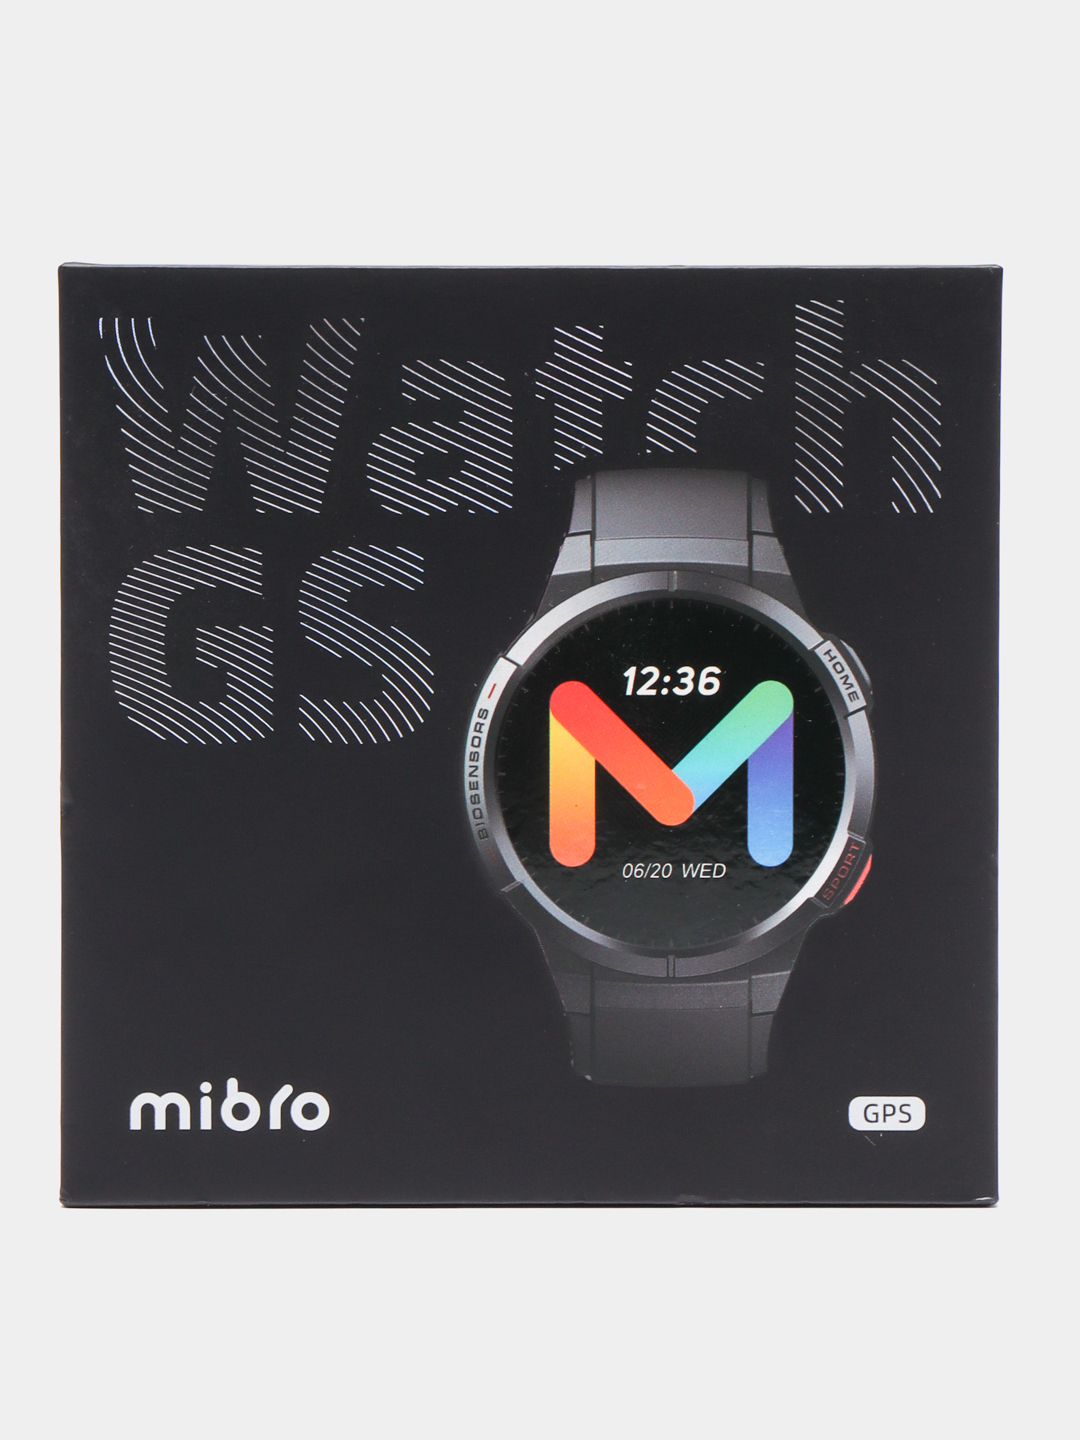 Часы mibro watch gs